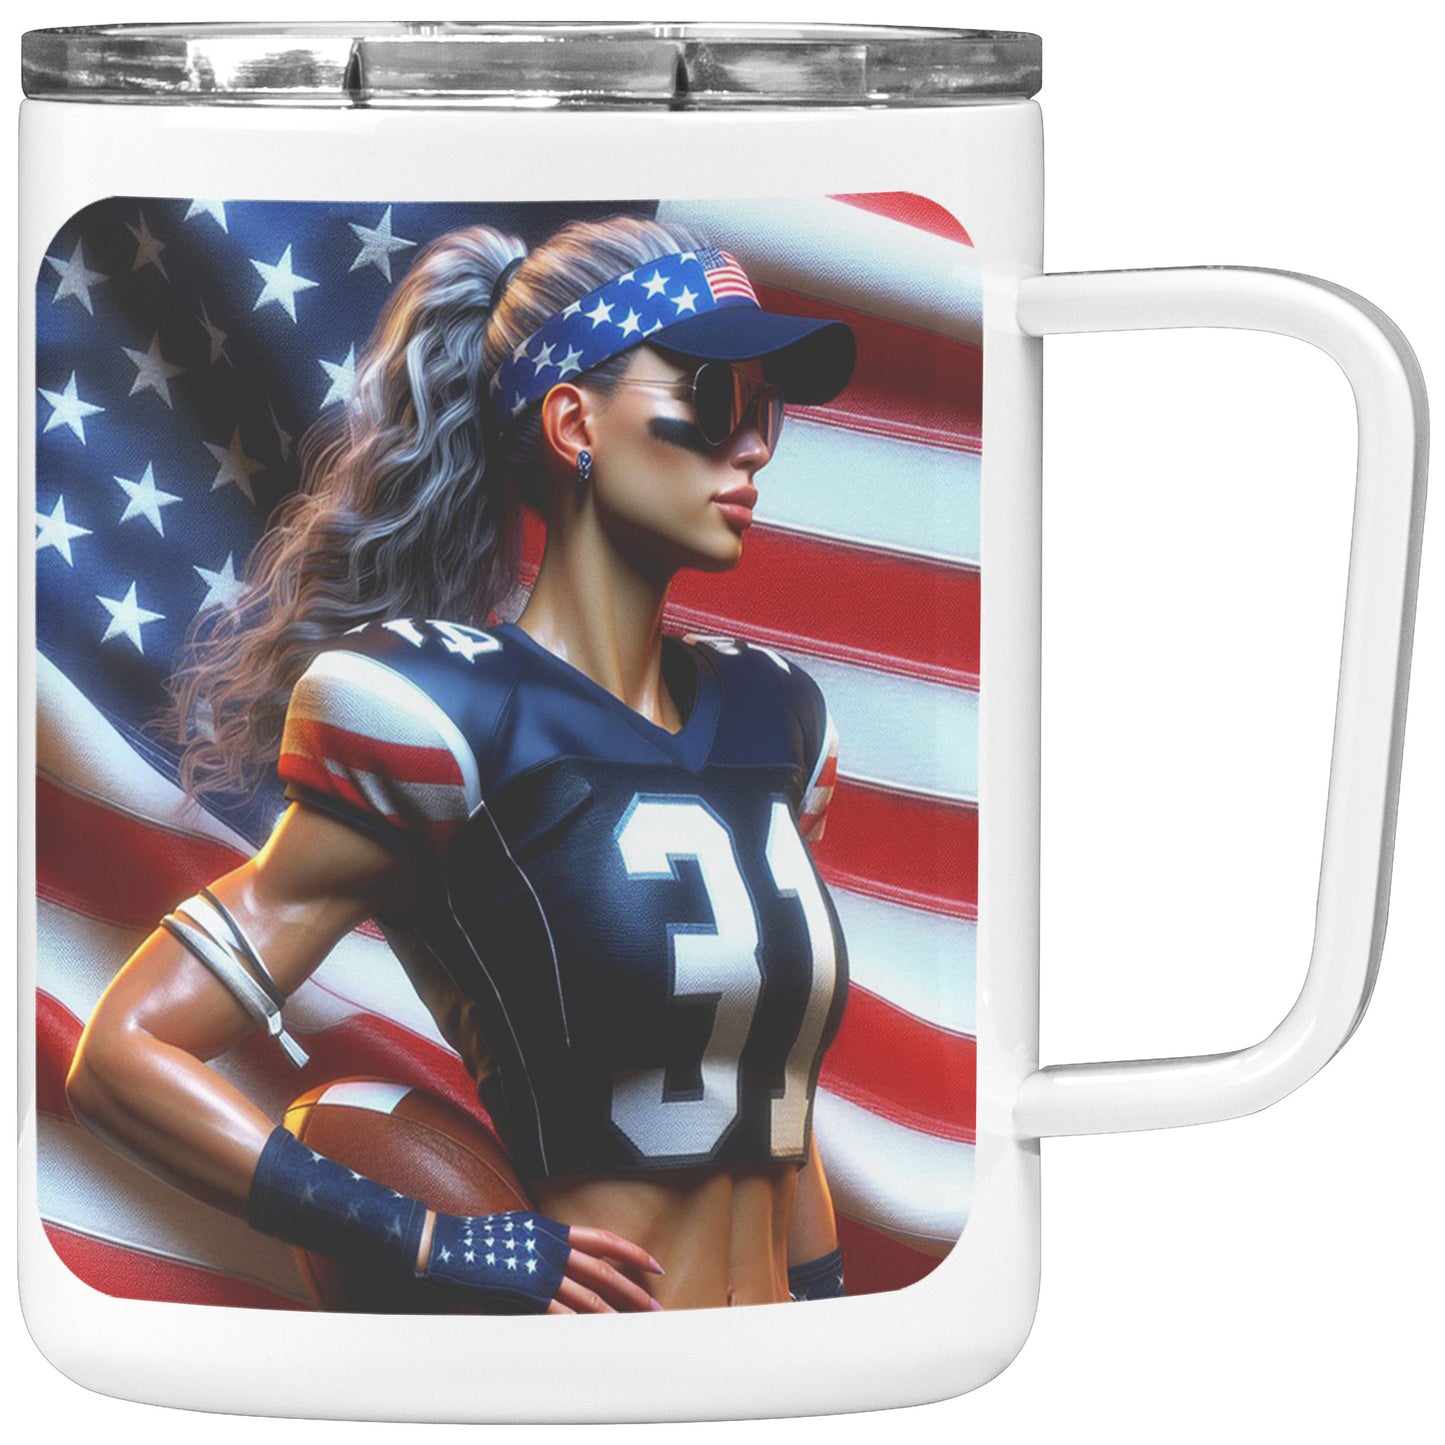 Woman Football Player - Insulated Coffee Mug #49